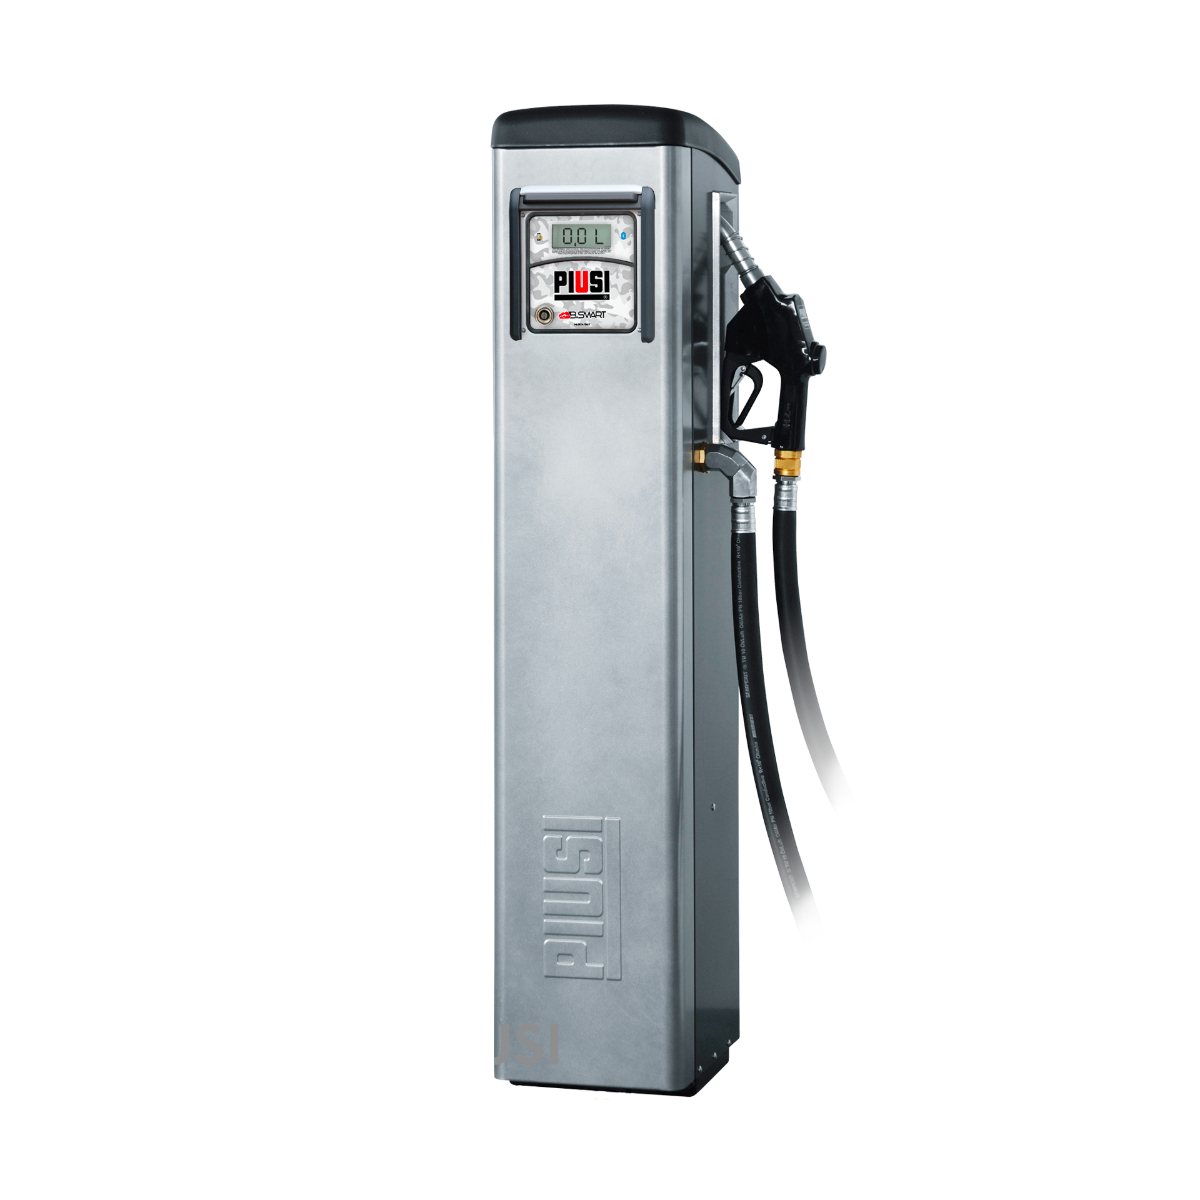 Piusi Dispenser Completo per Erogazione Diesel | Self Service B.SMART